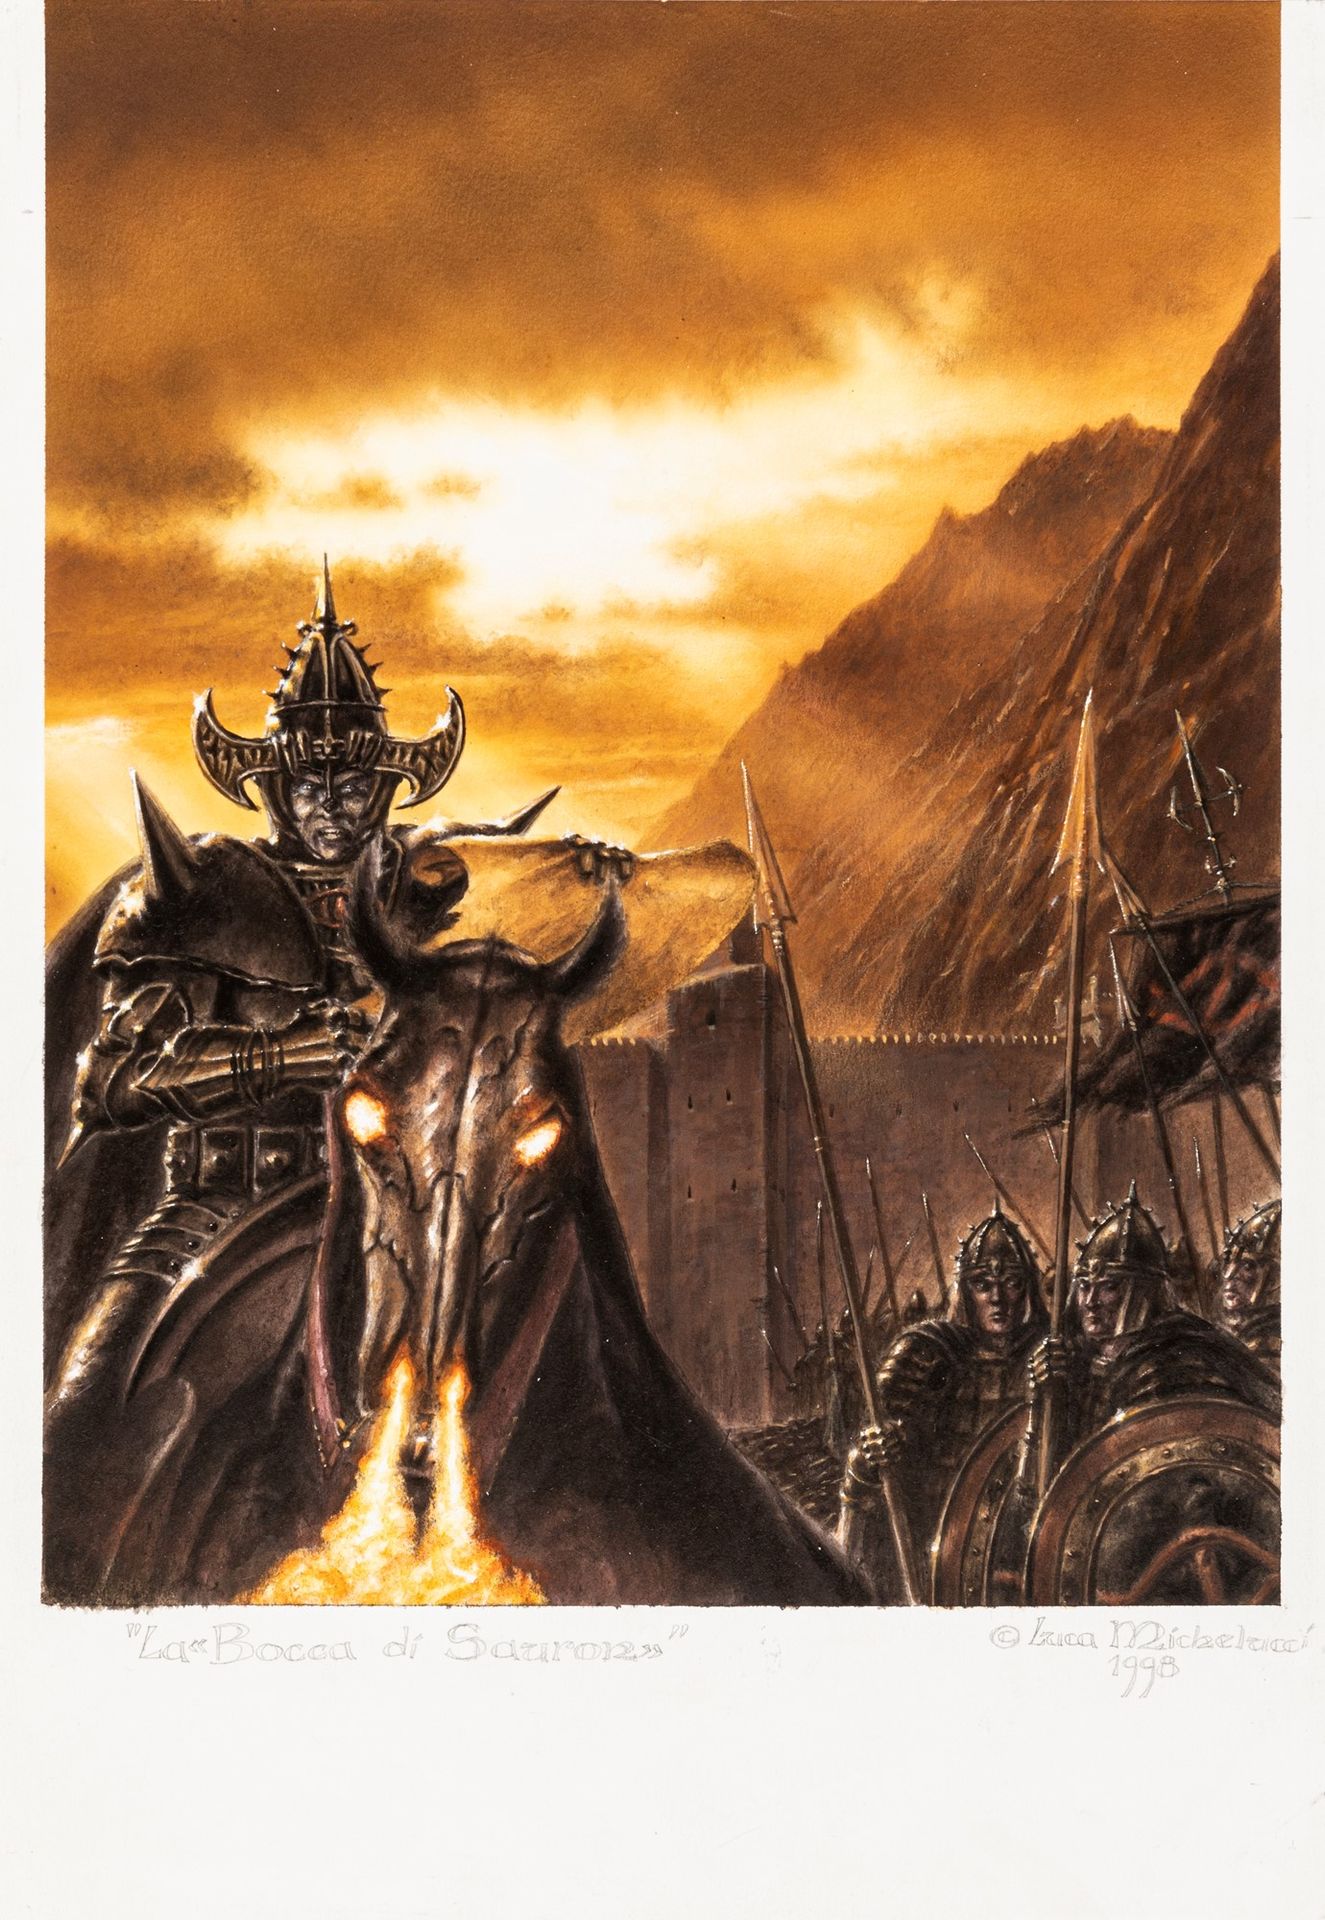 Luca Michelucci Der Mund von Sauron, 1998

Acryl und Airbrush auf dünnem Karton
&hellip;